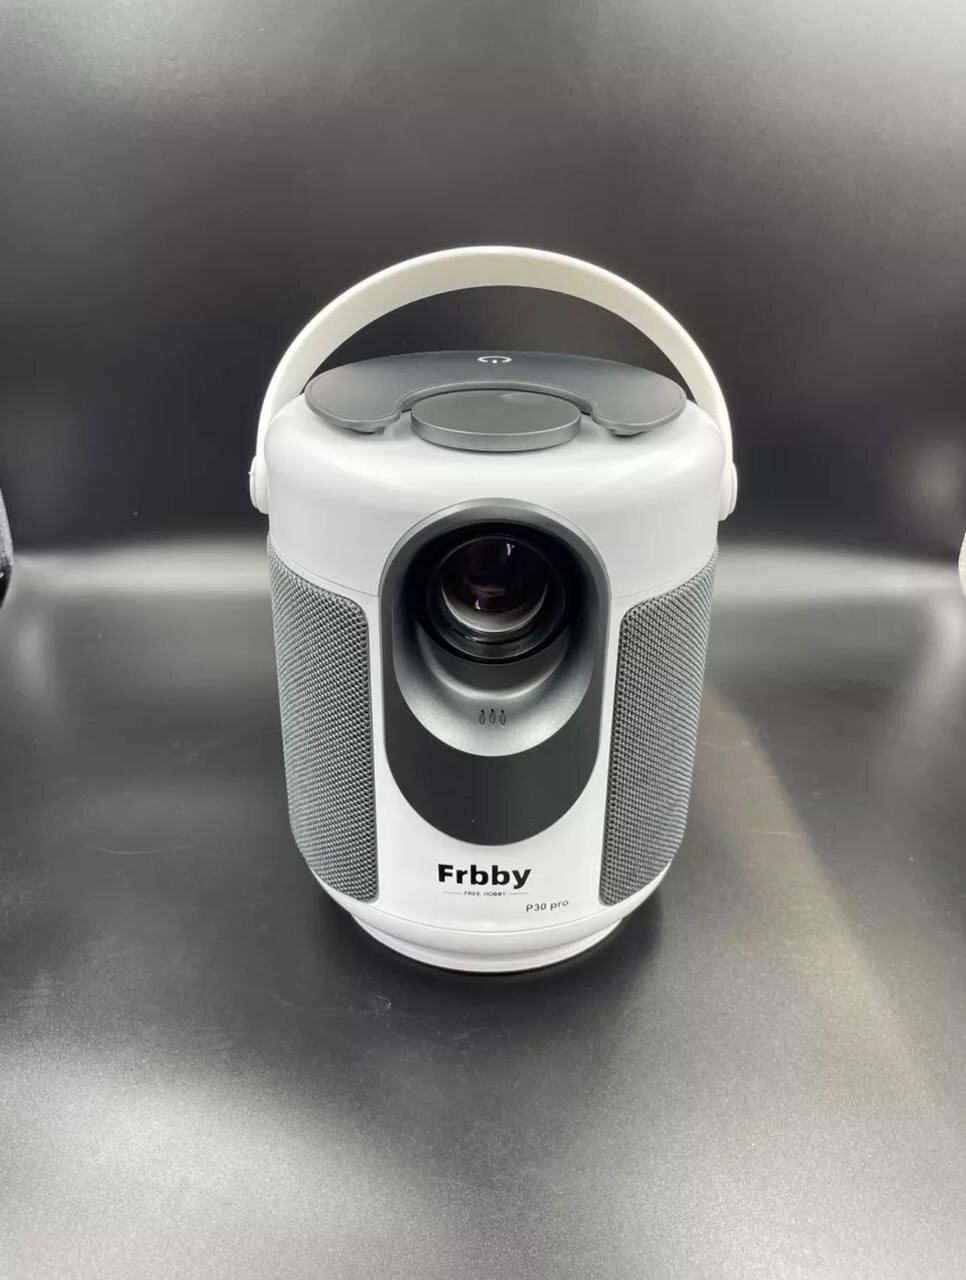 Проектор Frbby P30 Pro/Frbby P30 Pro Projector" - компактный и удобный проектор для дома и путешествий